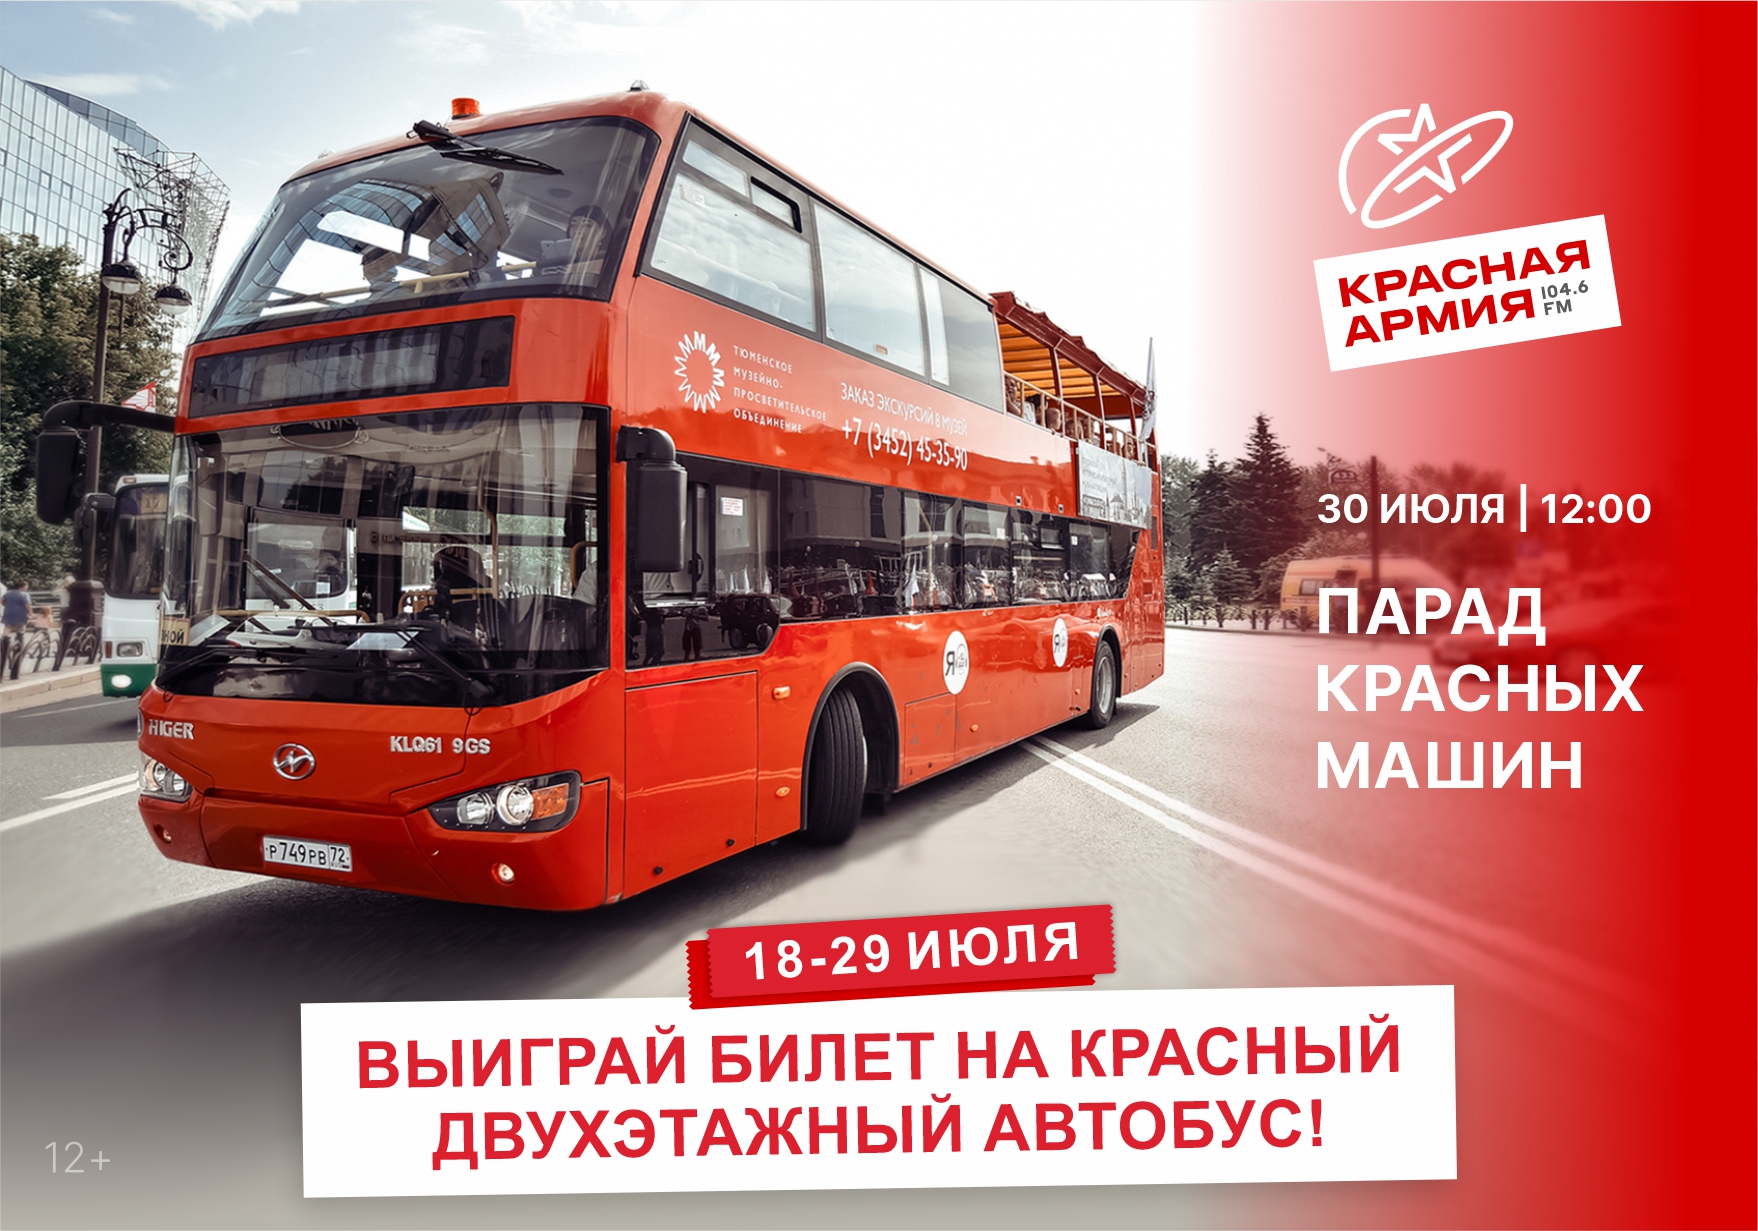 Красный двухэтажный автобус Нижний Новгород. Красный автобус Ангарск. Красный автобус Калининград. Автобусы западных производителей.